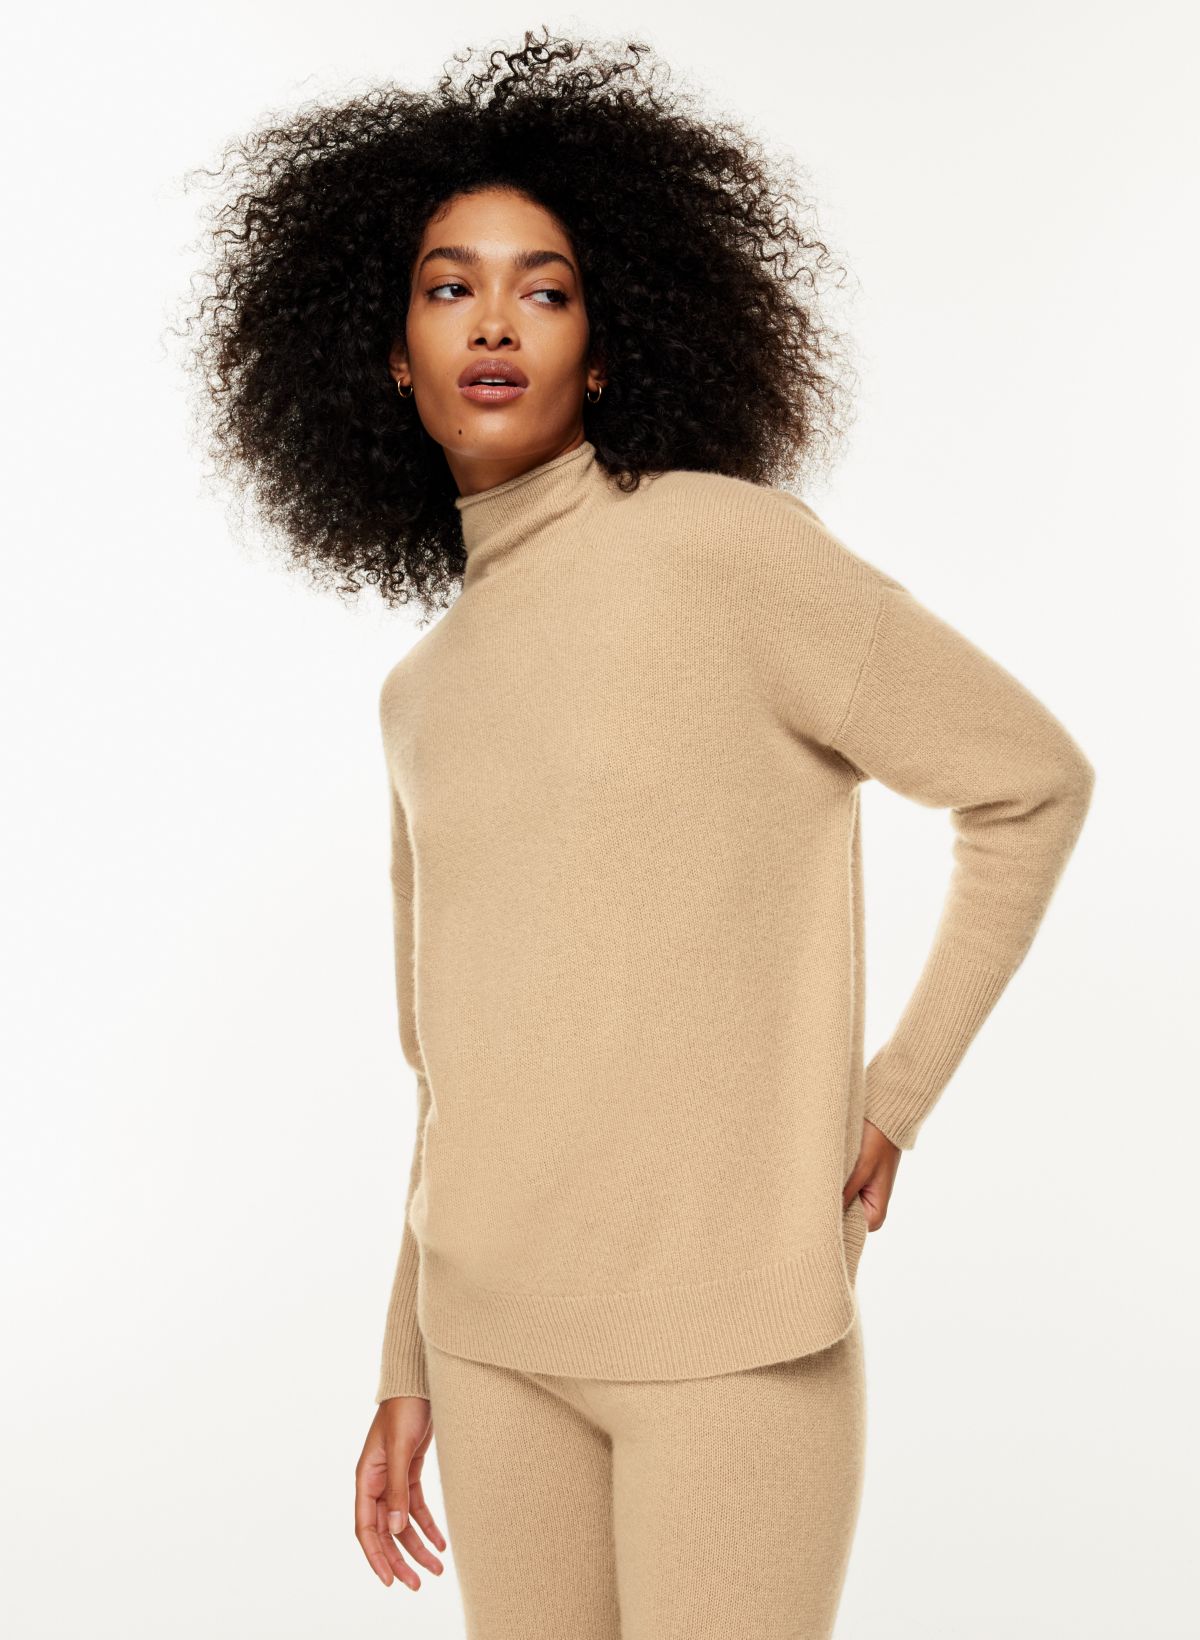 Women's Cotton/Cashmere Sweater, Turtleneck Light Gray Heather Small, Cashmere Cotton | L.L.Bean